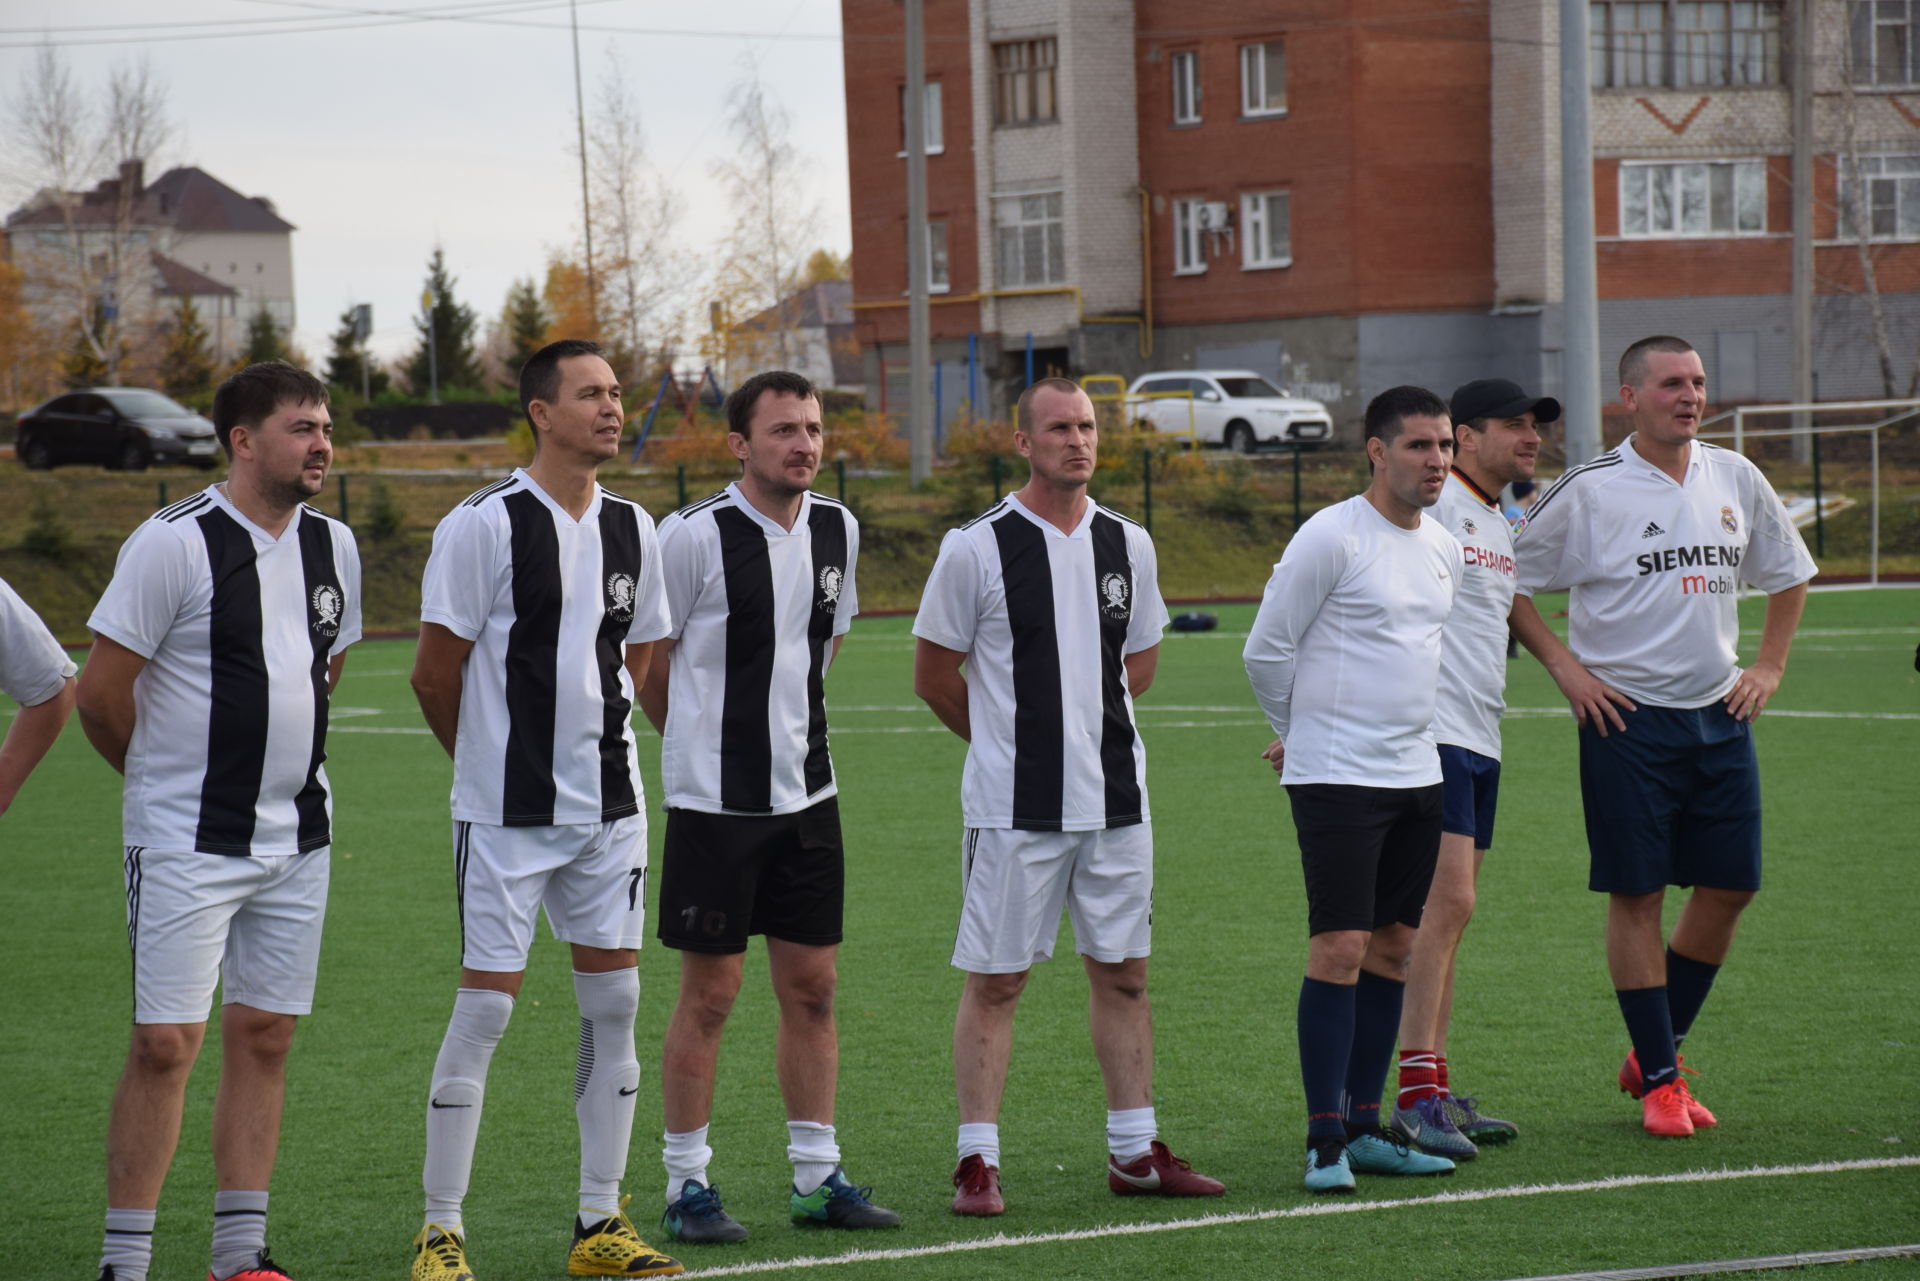 В Нурлате торжественно открылся спортивный парк имени прославленного футболиста Галимзяна Хусаинова